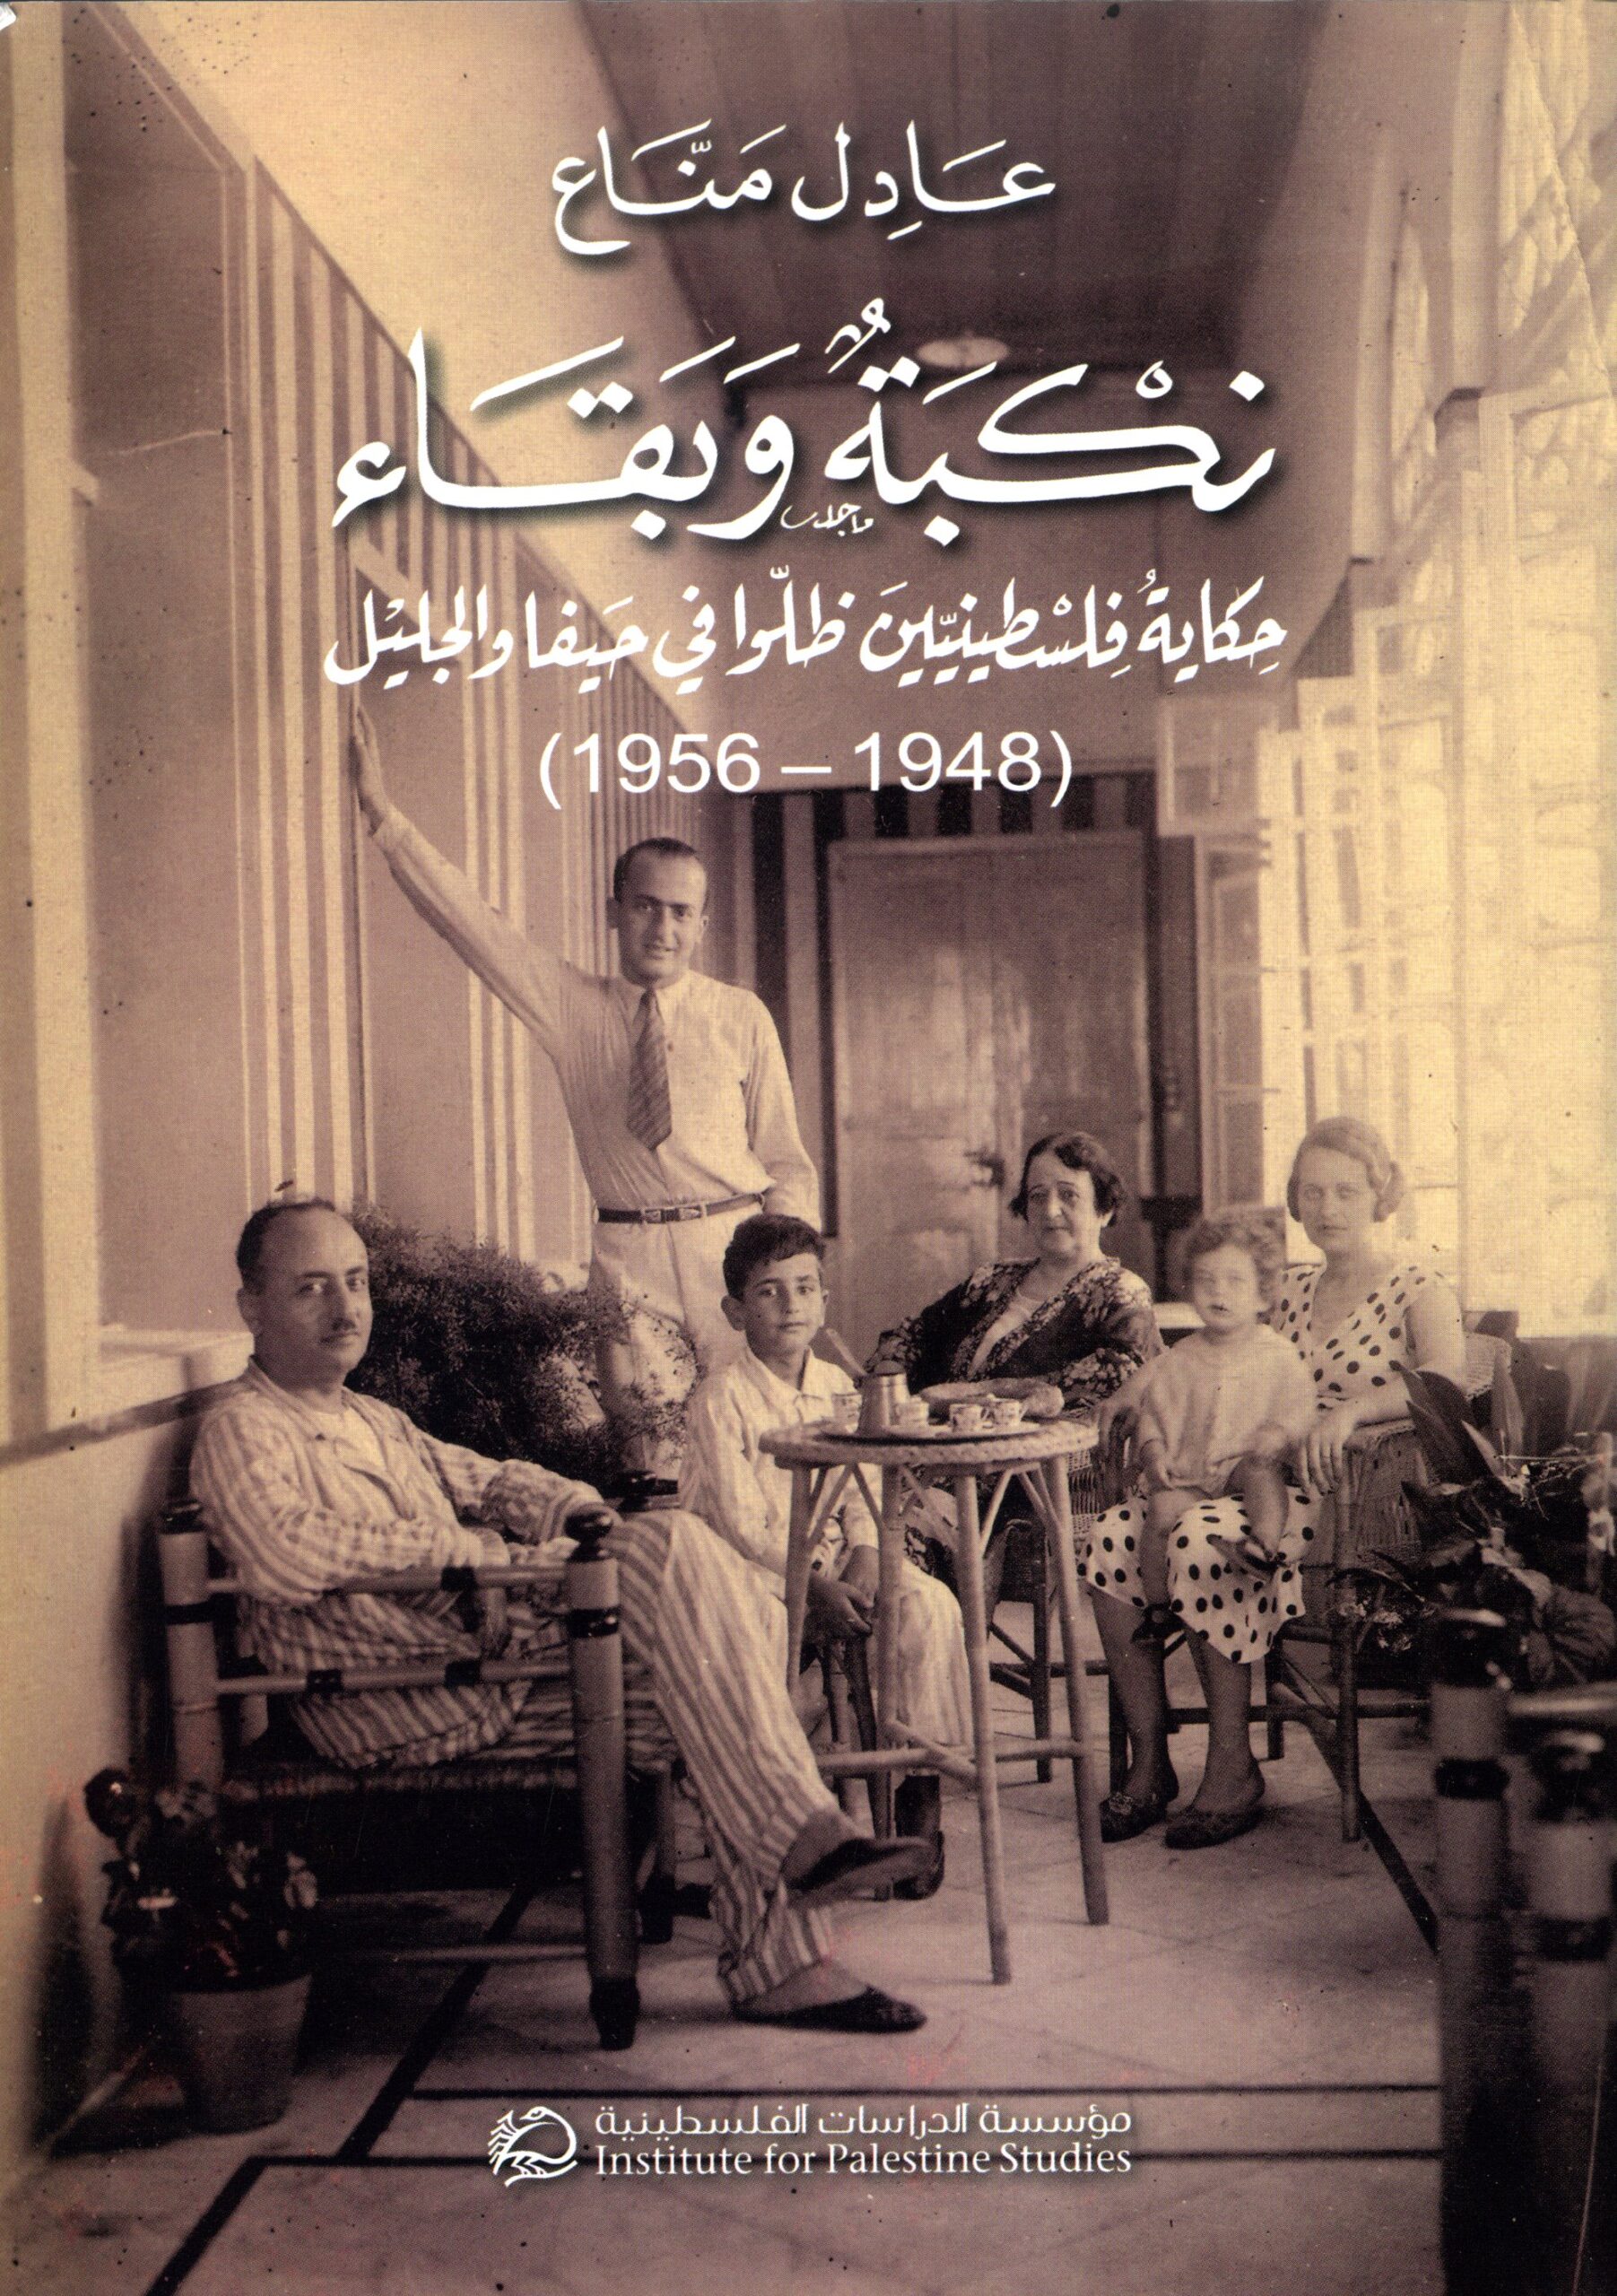 نكبة وبقاء: حكاية فلسطينيين ظلوا في حيفا والجليل (1948 – 1956)